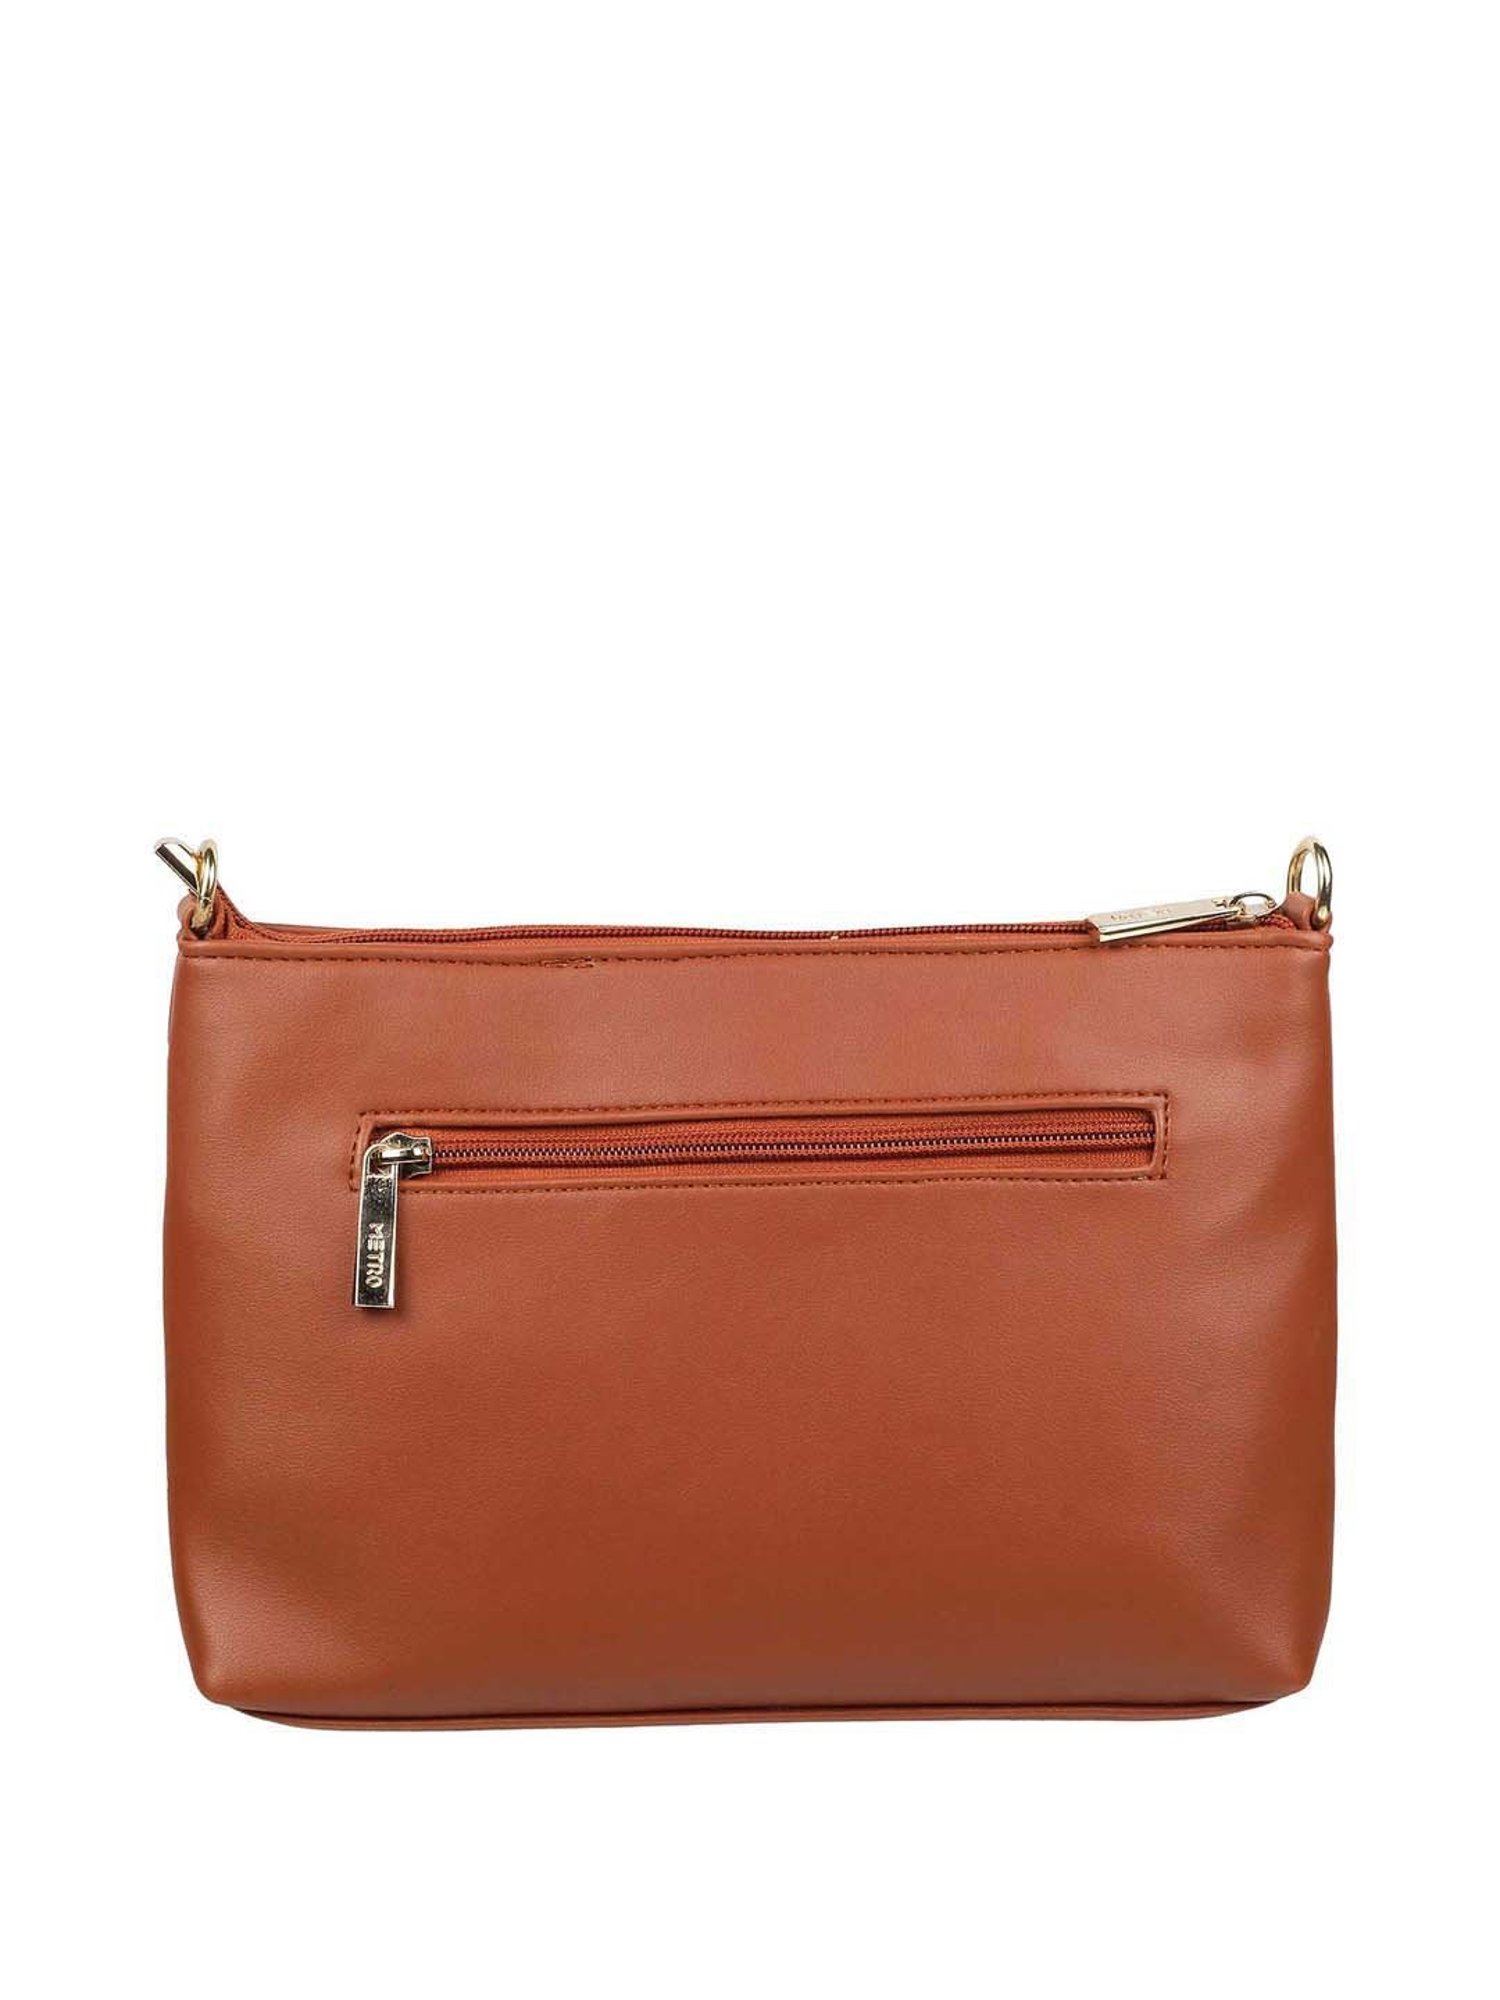 Buy METRO Men & Women Brown Handbag 12-Brown Online @ Best Price in India |  Flipkart.com